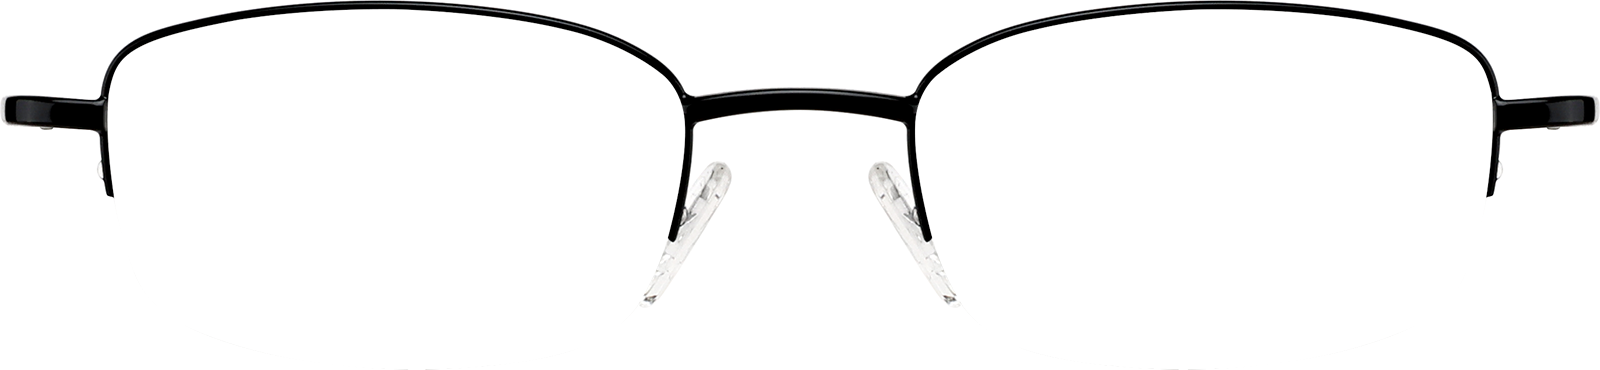 Rectangle Glasseslens frame image